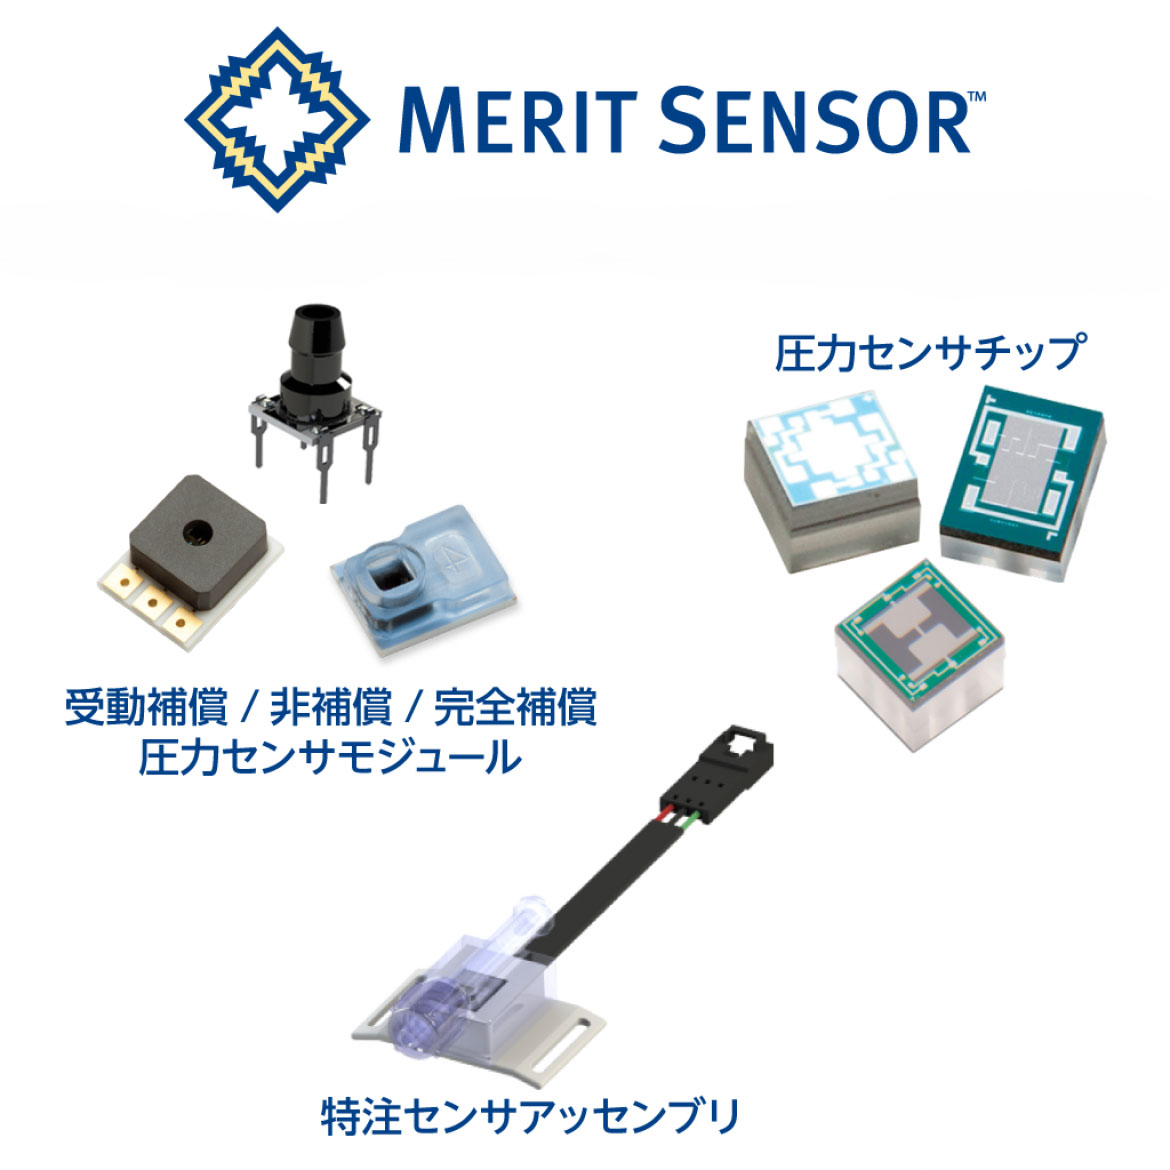 Merit Sensor 社のブースイメージ